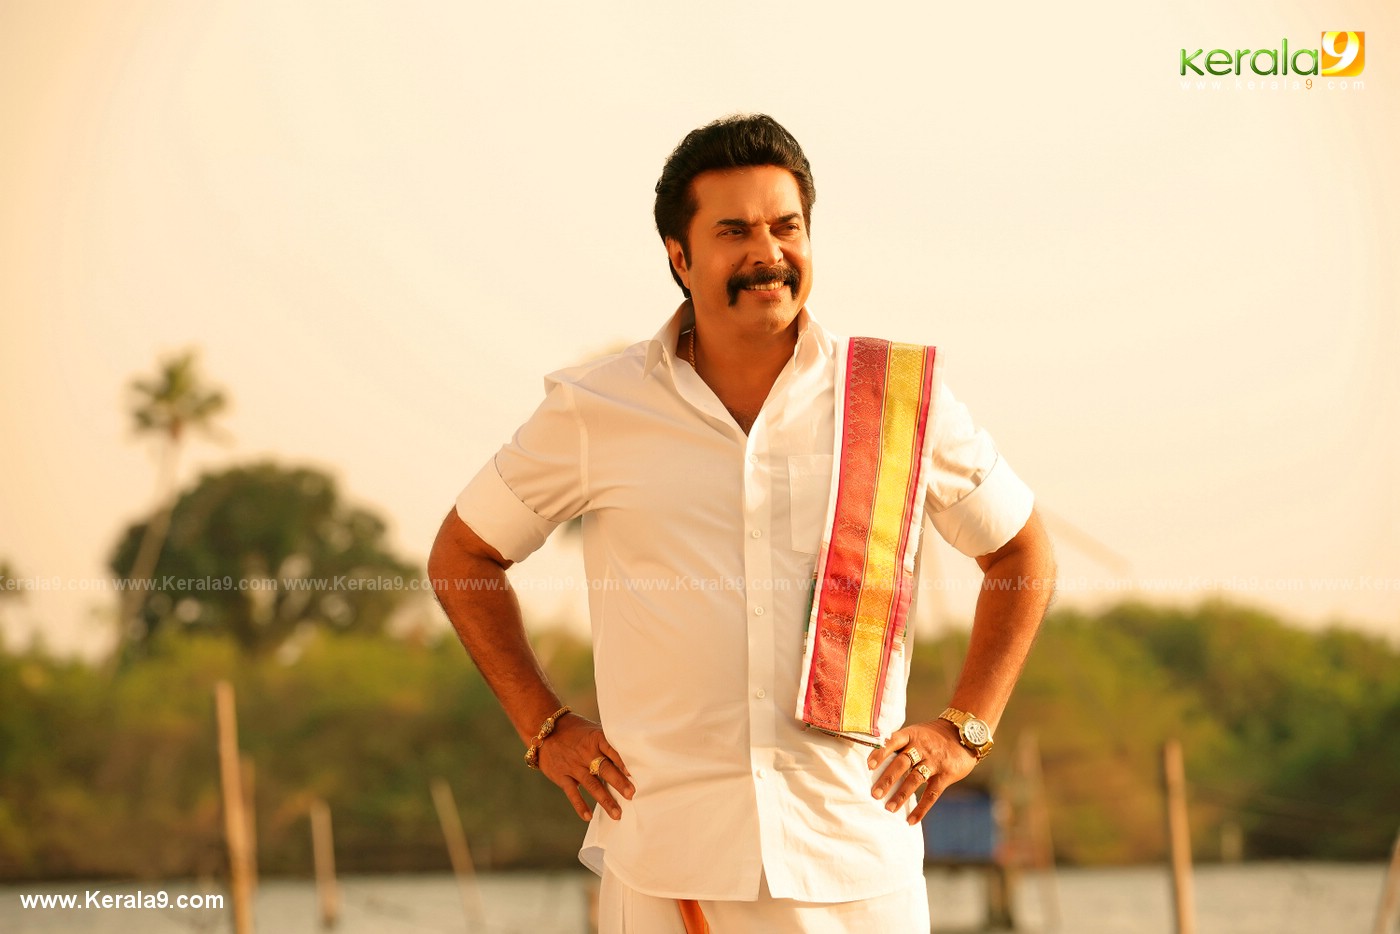 madura raja movie stills 20 - Kerala9.com